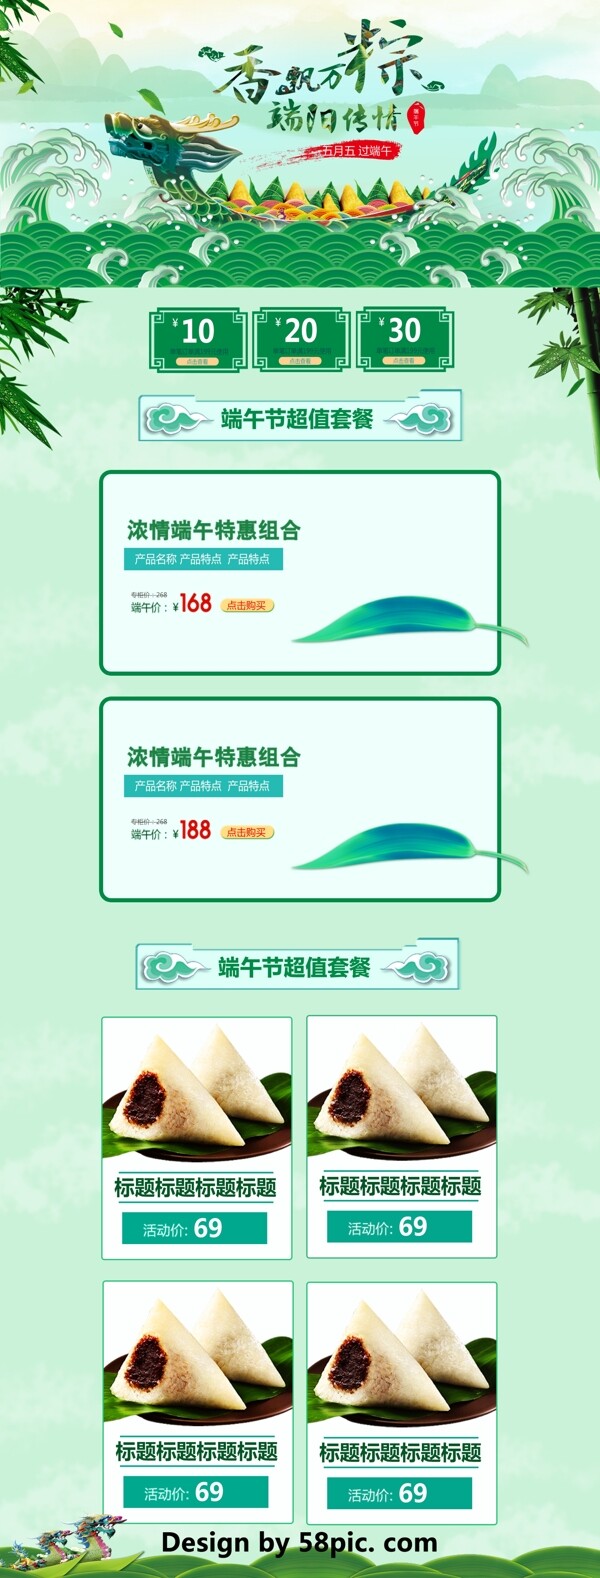 蓝绿色中国风电商促销端午节首页促销模板